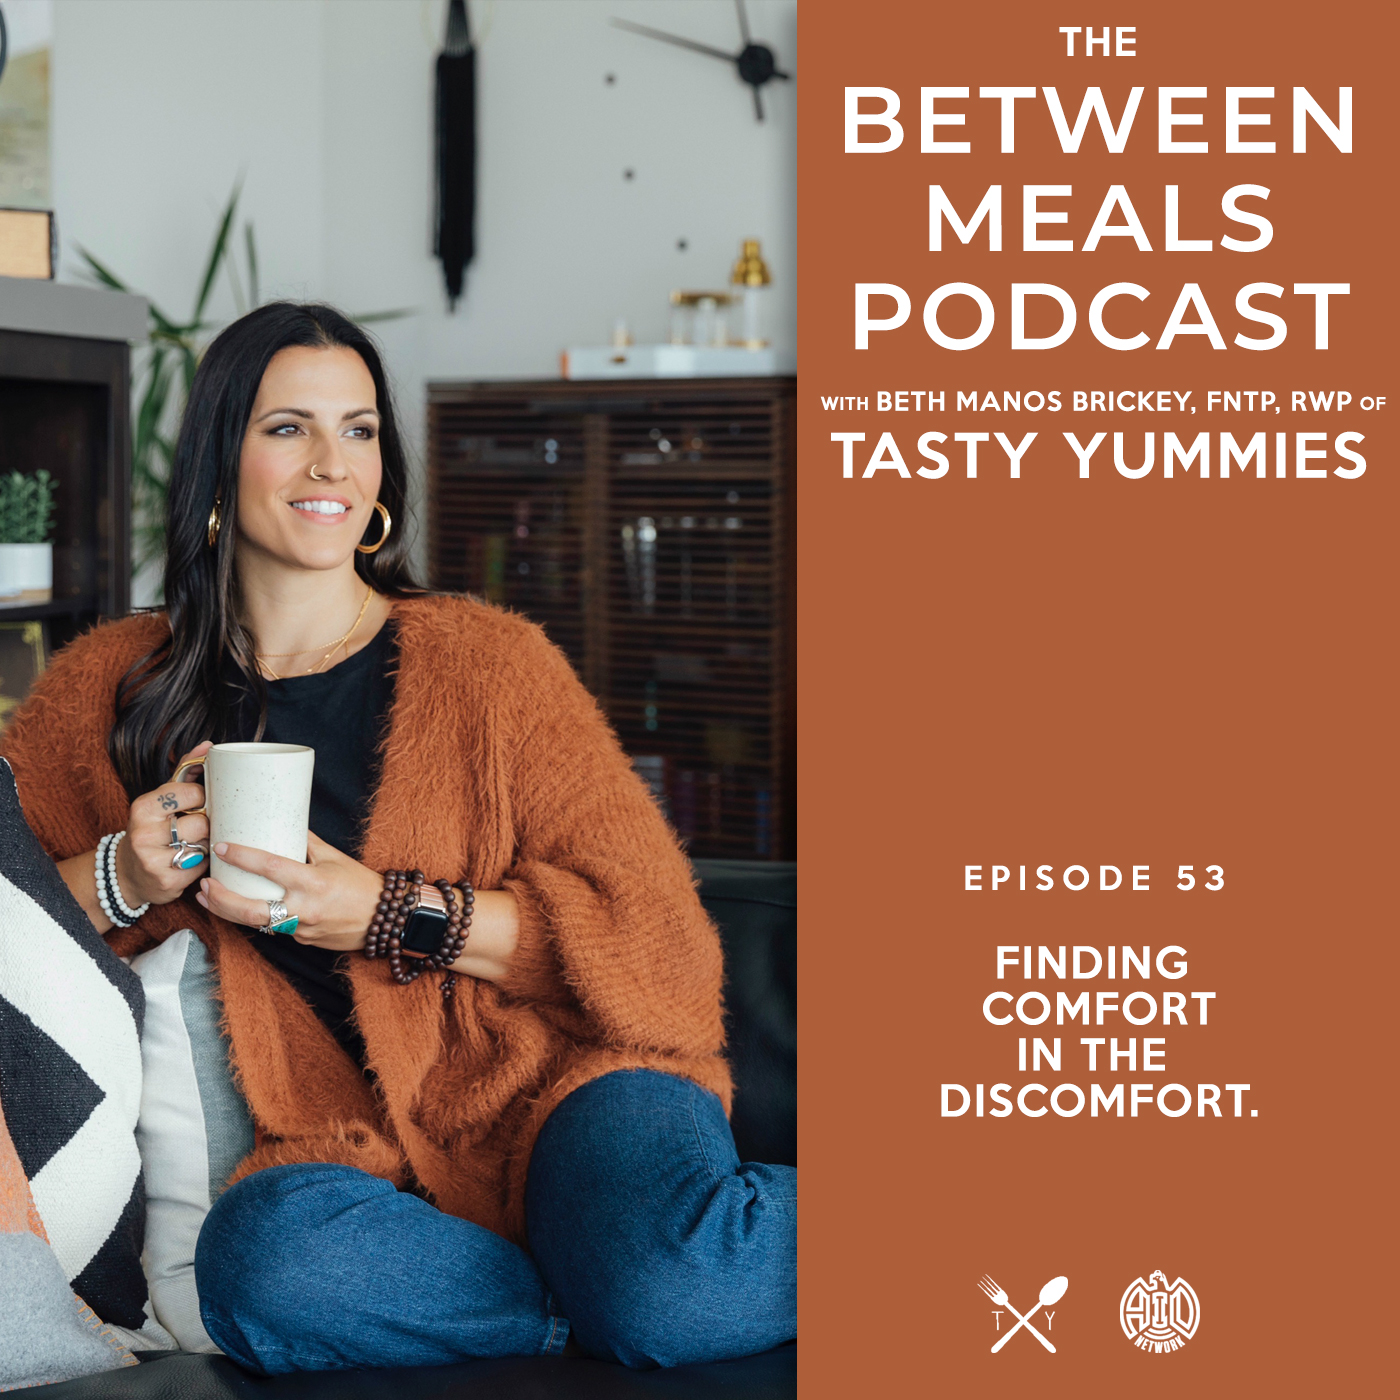 Between Meals Podcast. Episode 53: Finding Comfort in the Discomfort